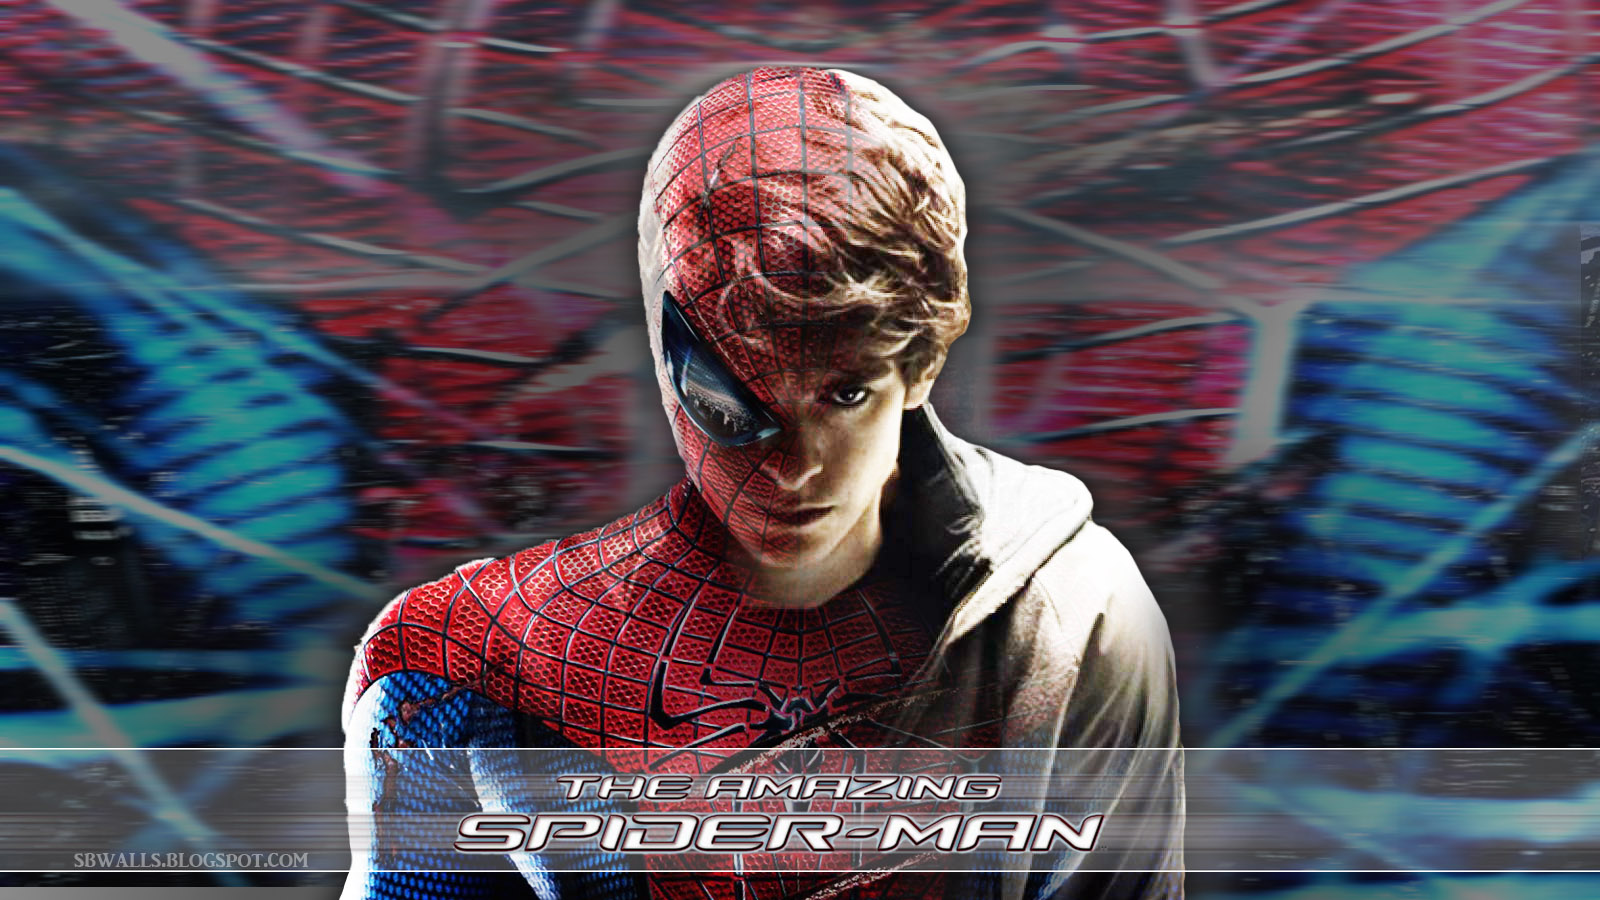 Amazing Spiderman Movie Wallpaper - Spider-Man Wallpaper (31480807 ...